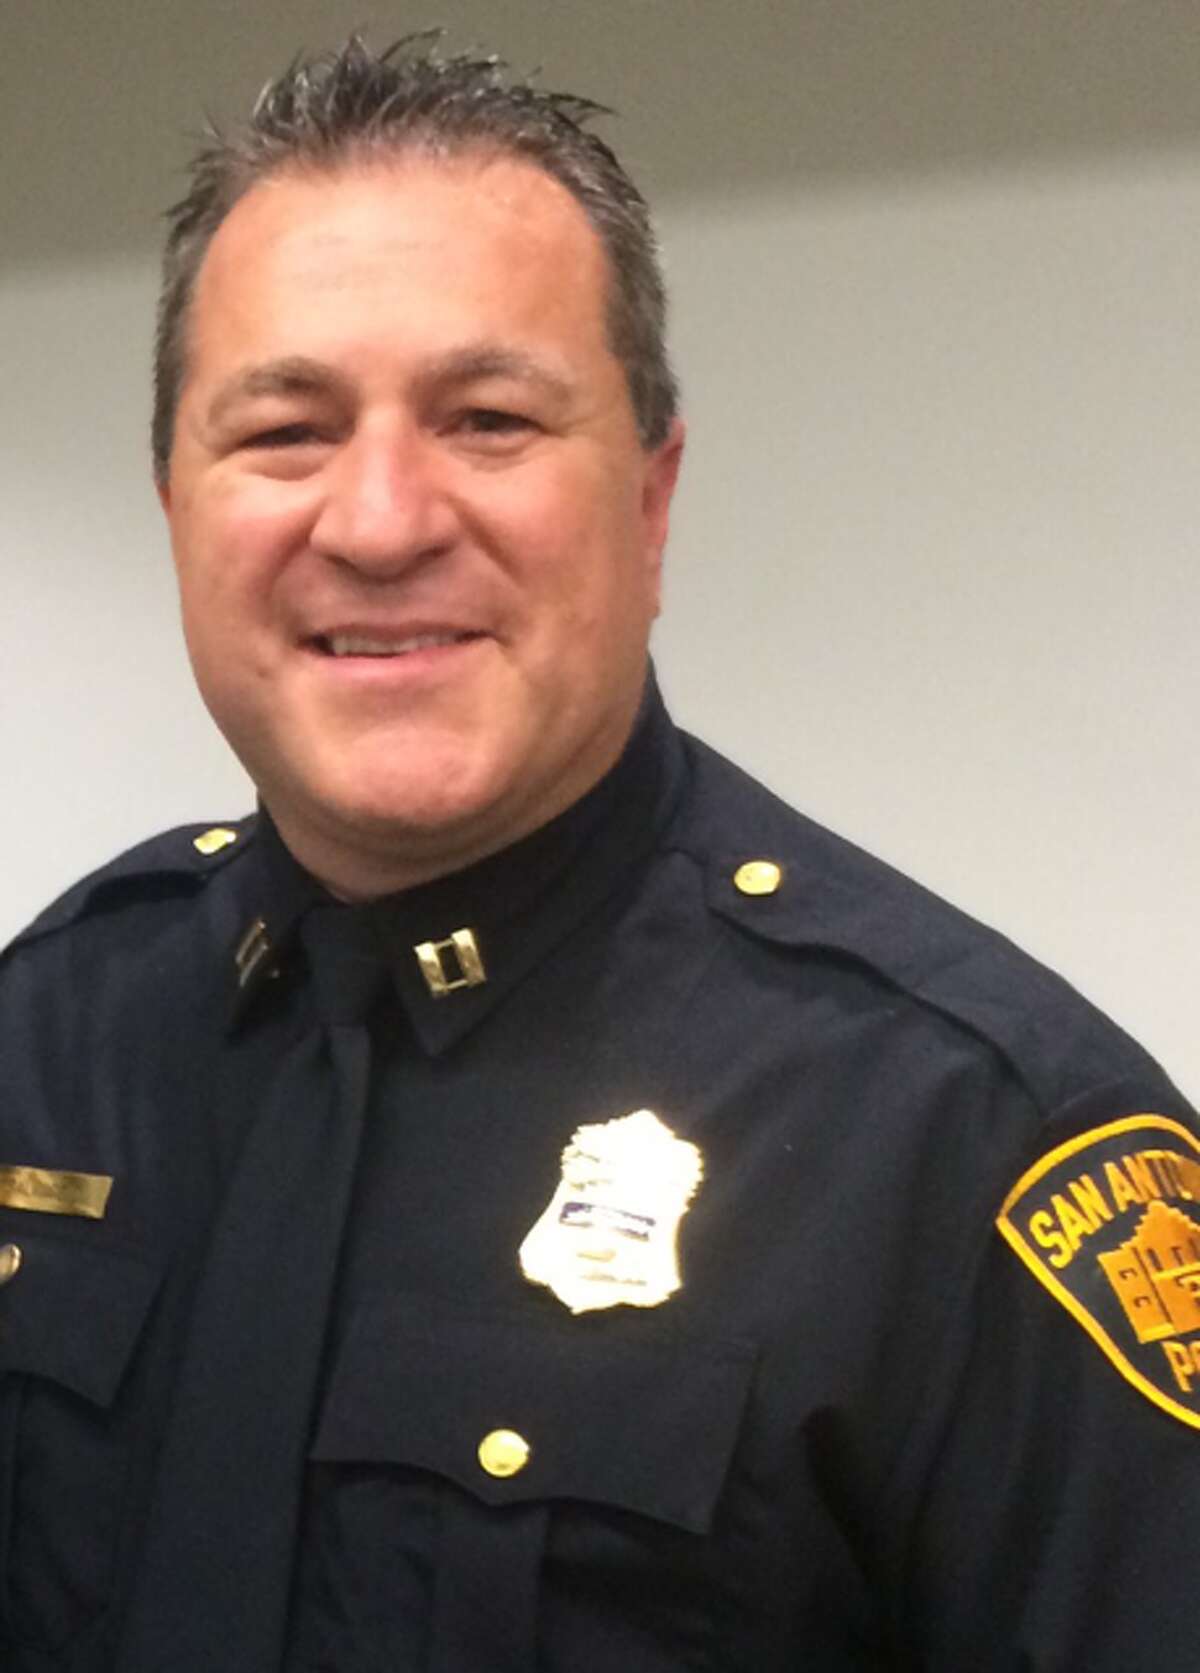 Leon Valley police chief Joseph Salvaggio